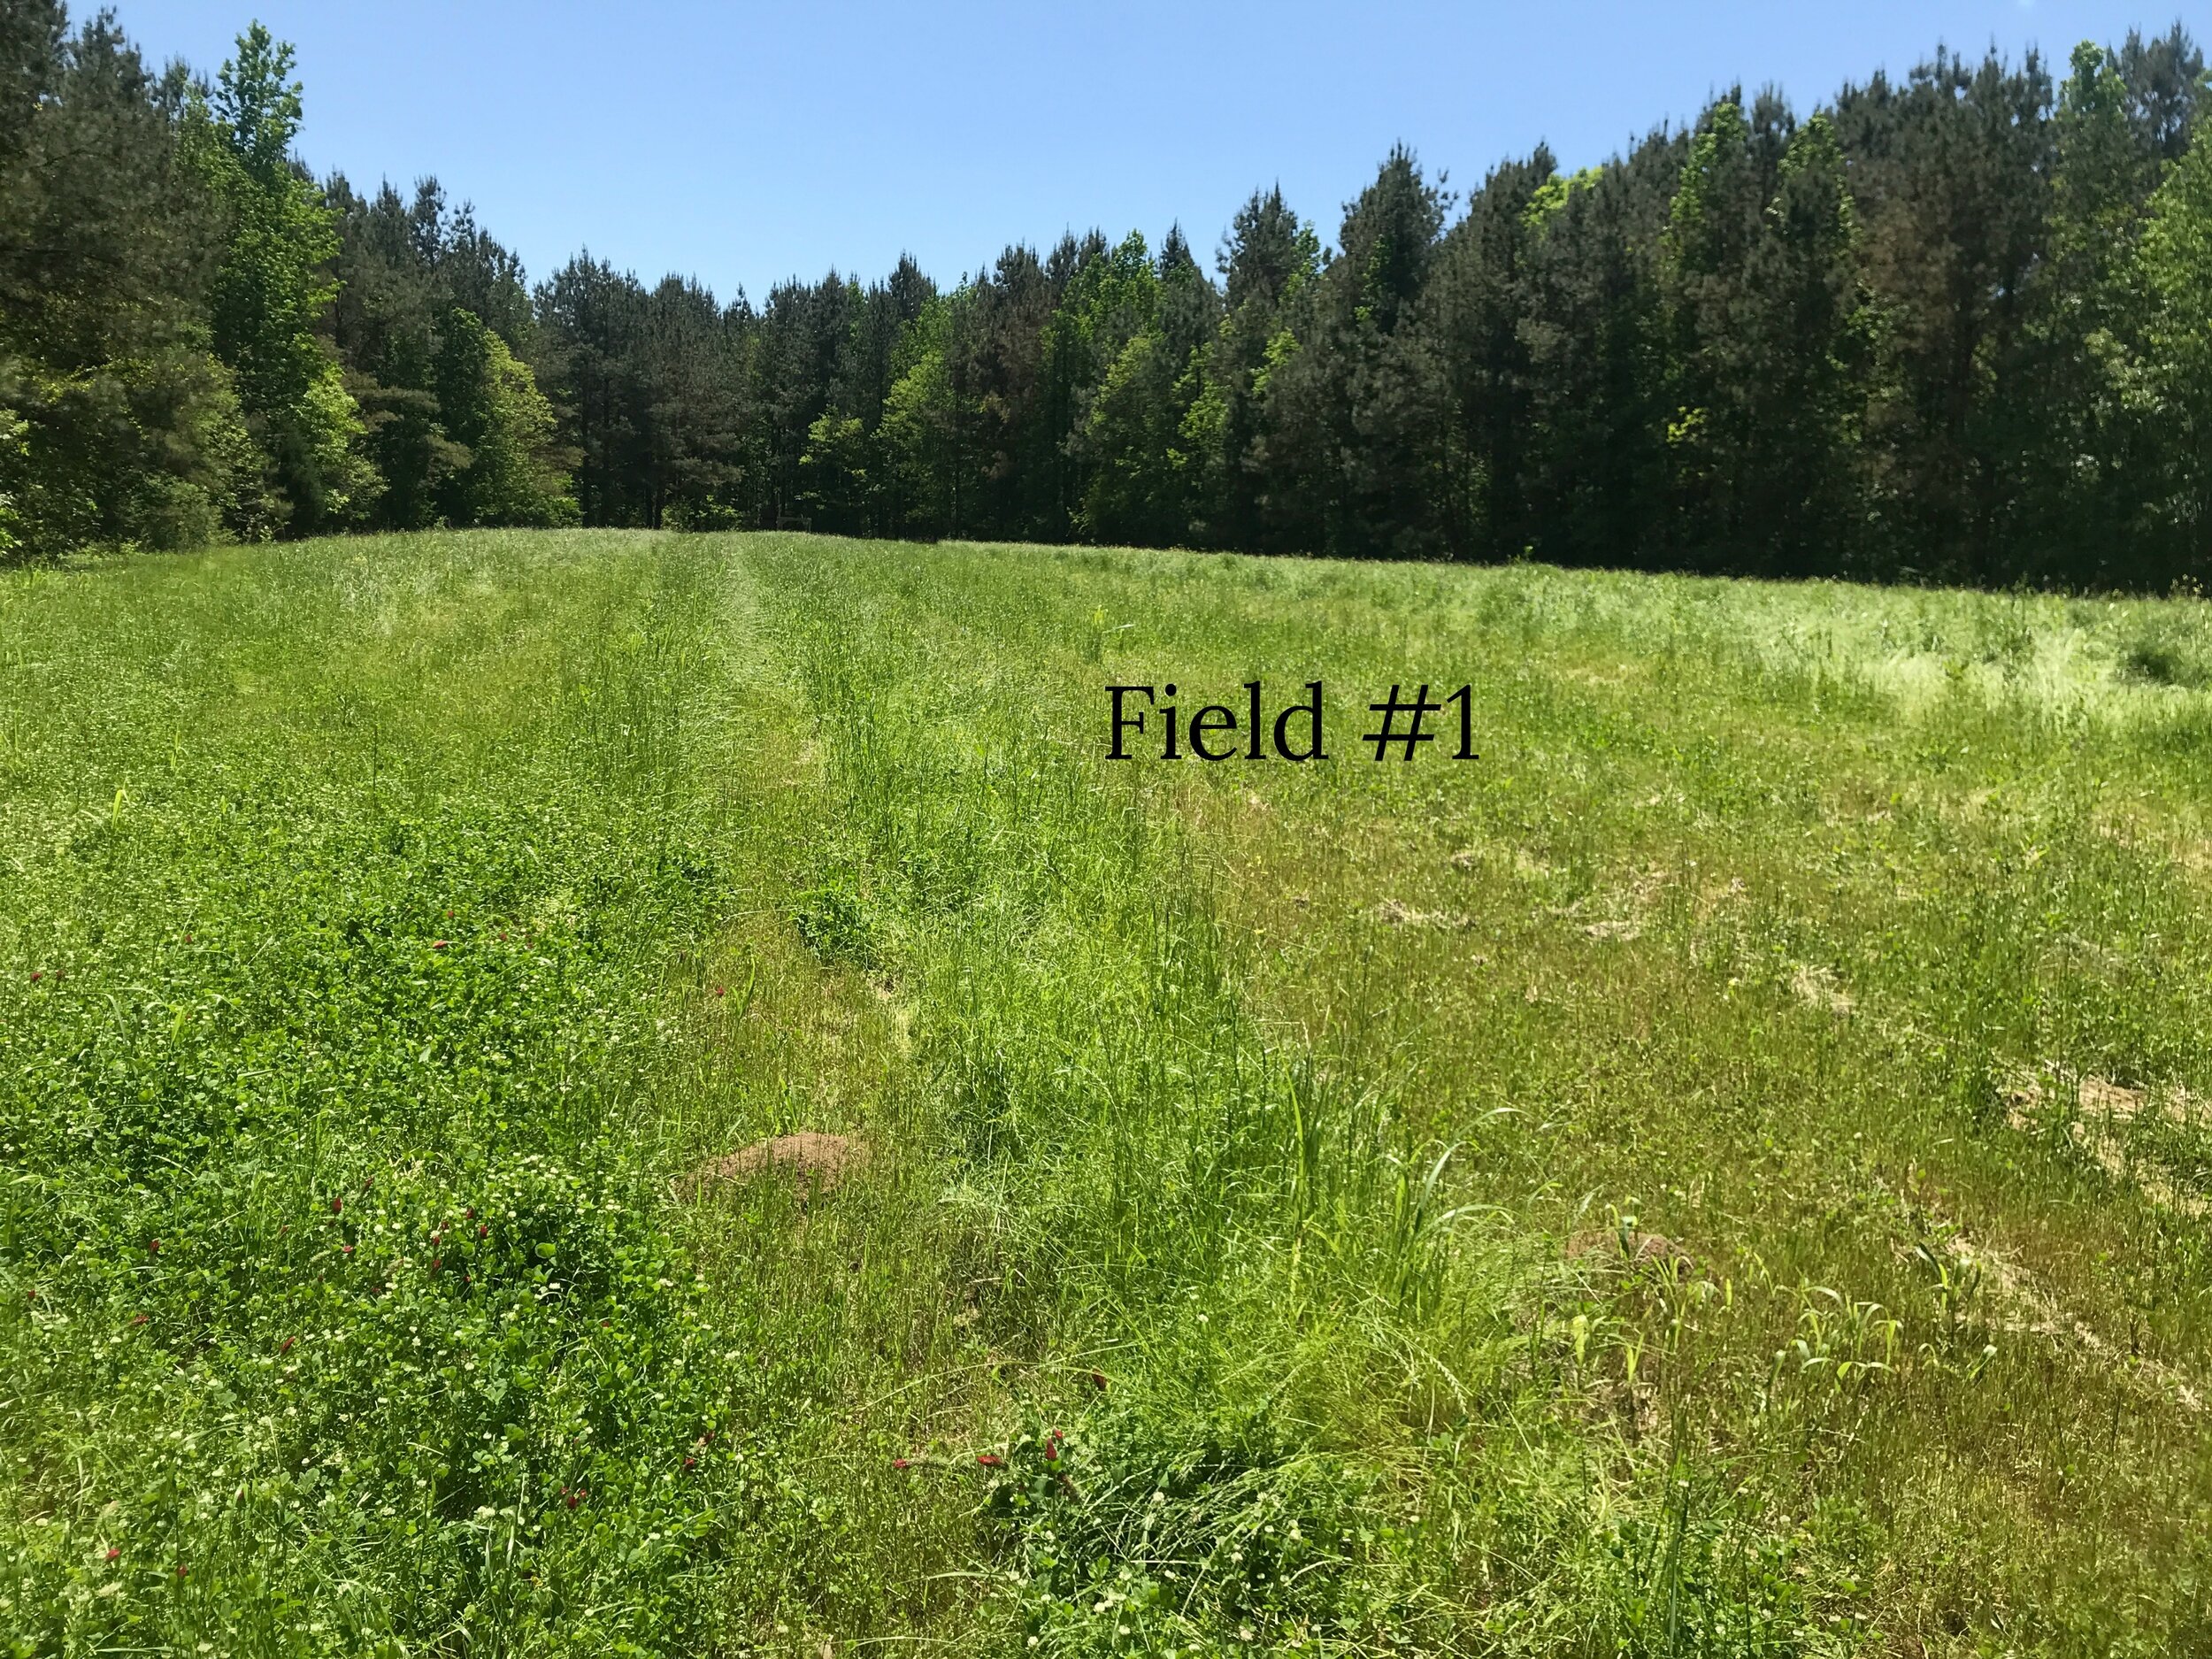 Field #1_test.jpg